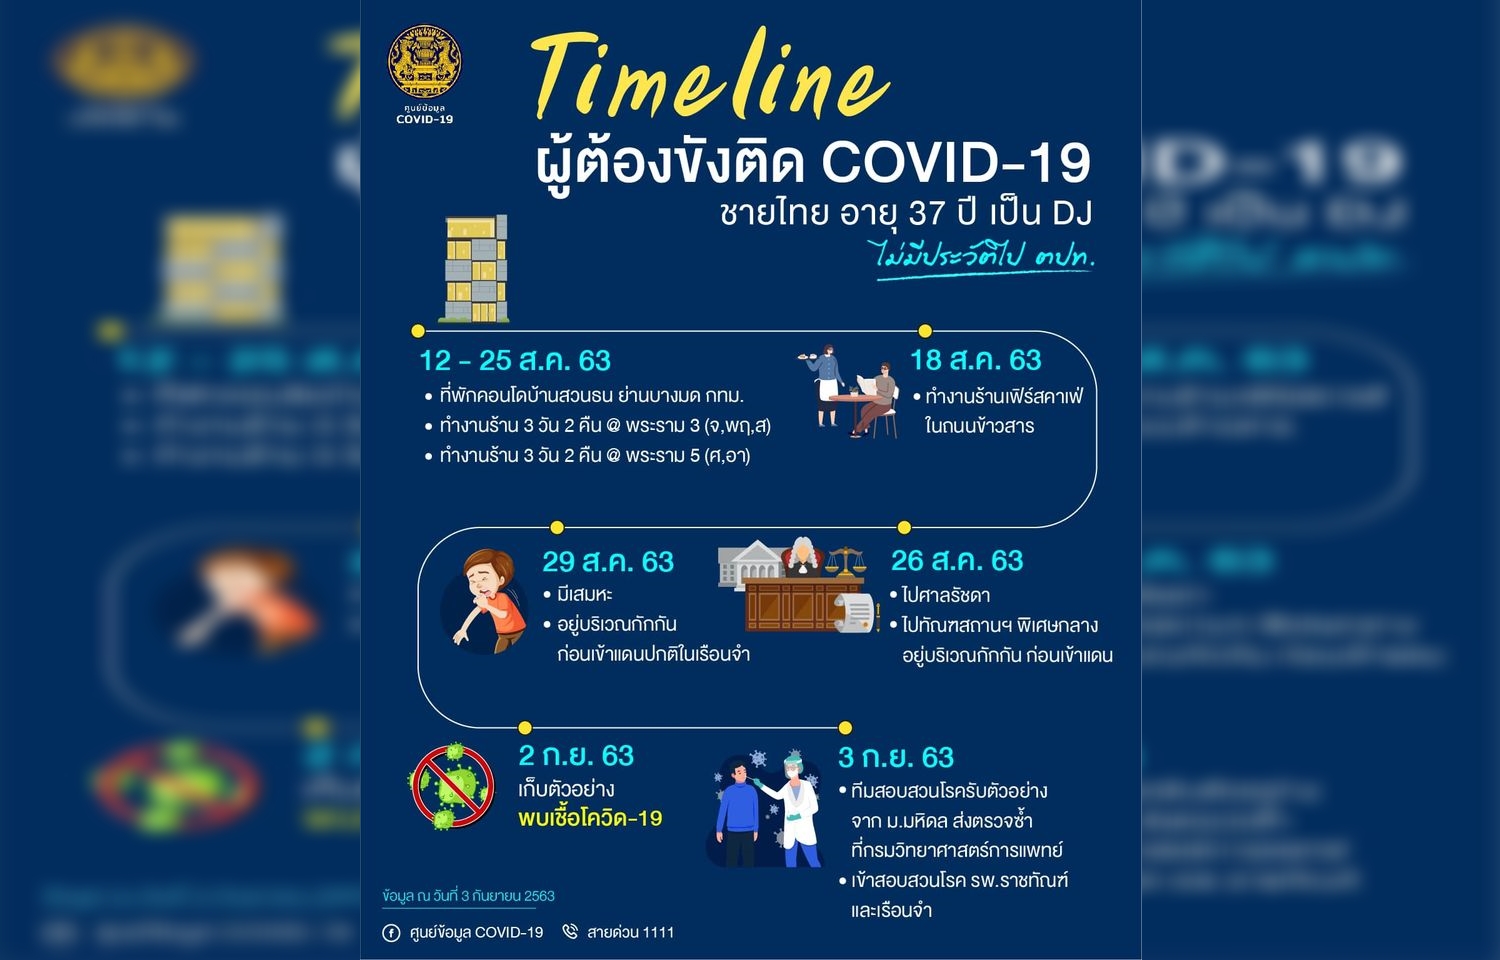 สรุป Timeline กรณีพบผู้ติดเชื้อ COVID-19 ในเรือนจำ ติดเชื้อในประเทศรอบ 101 วัน